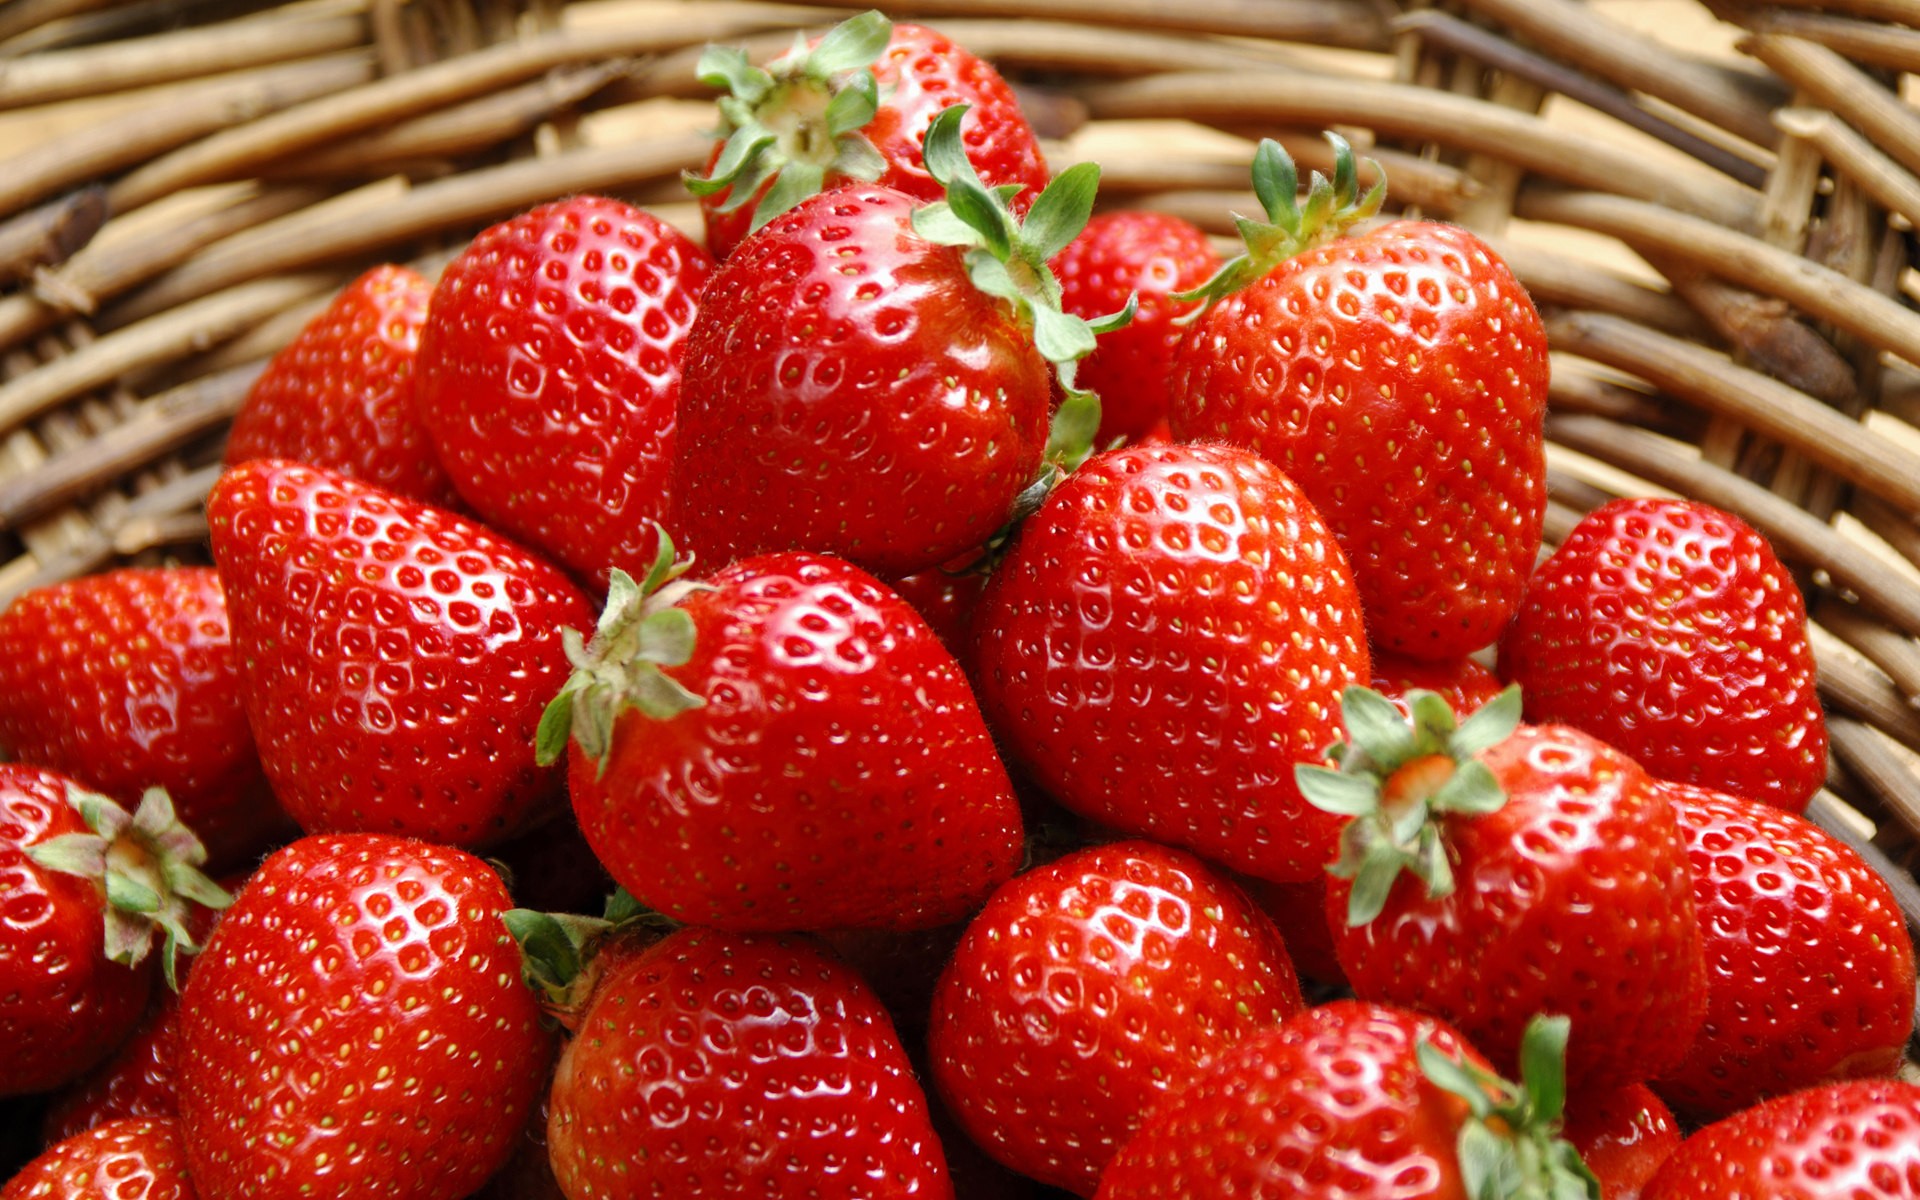 General 1920x1200 fruit strawberries baskets food closeup red red berries berries